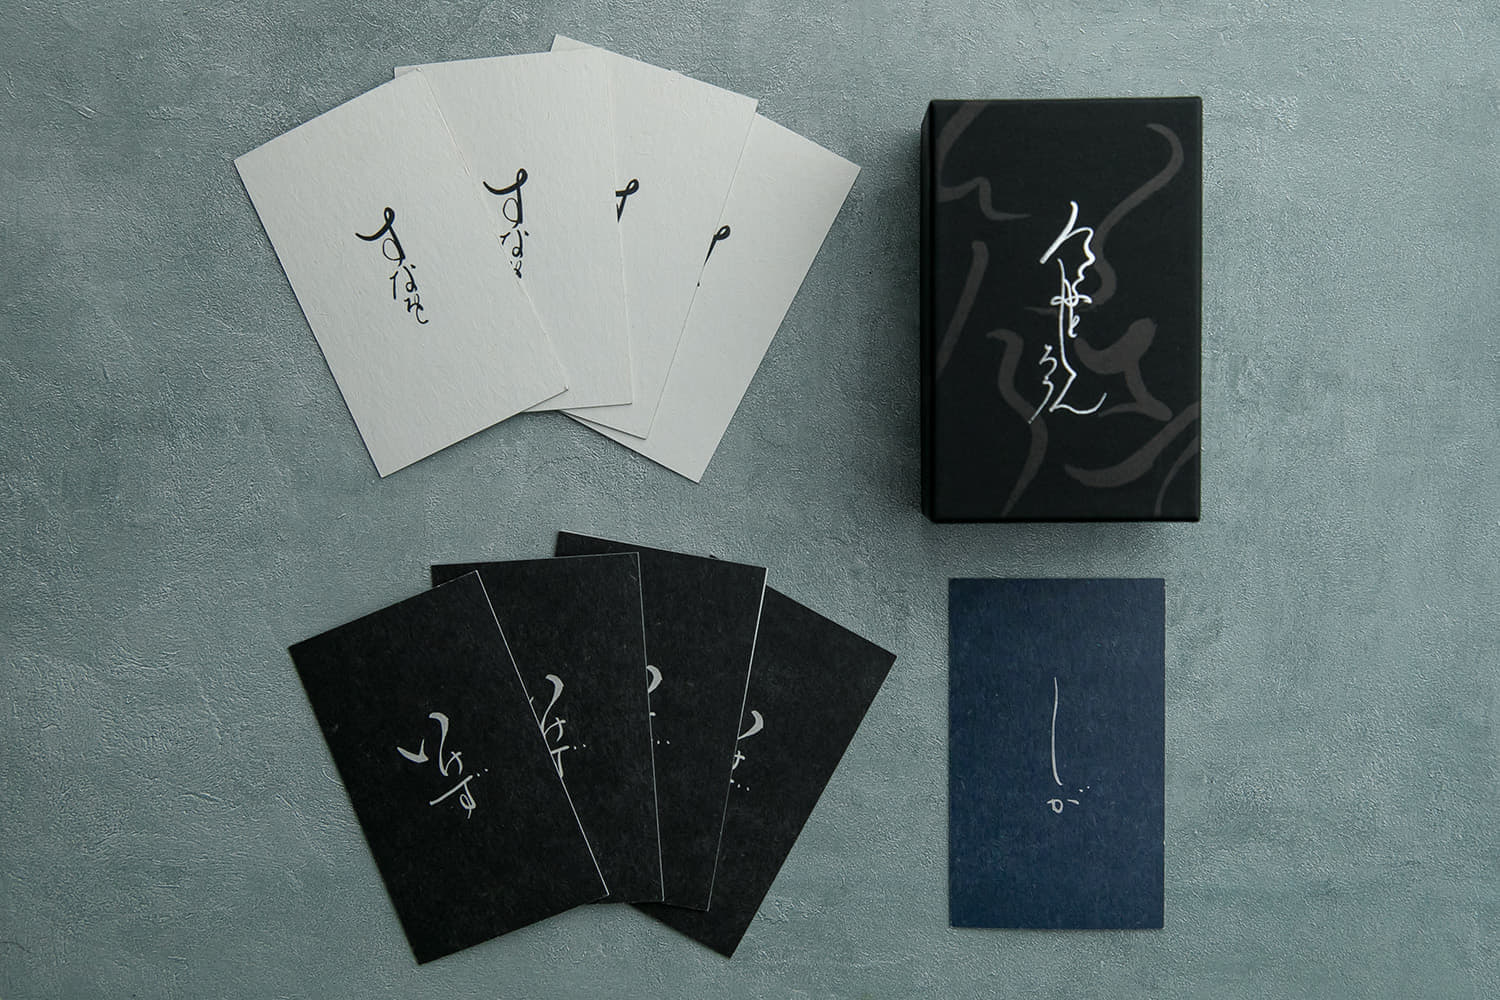 『京都人狼』発売開始。京都人の「いけずな本音」を見破る異色のボードゲーム。対象年歴は“京都在住15年以上”_004